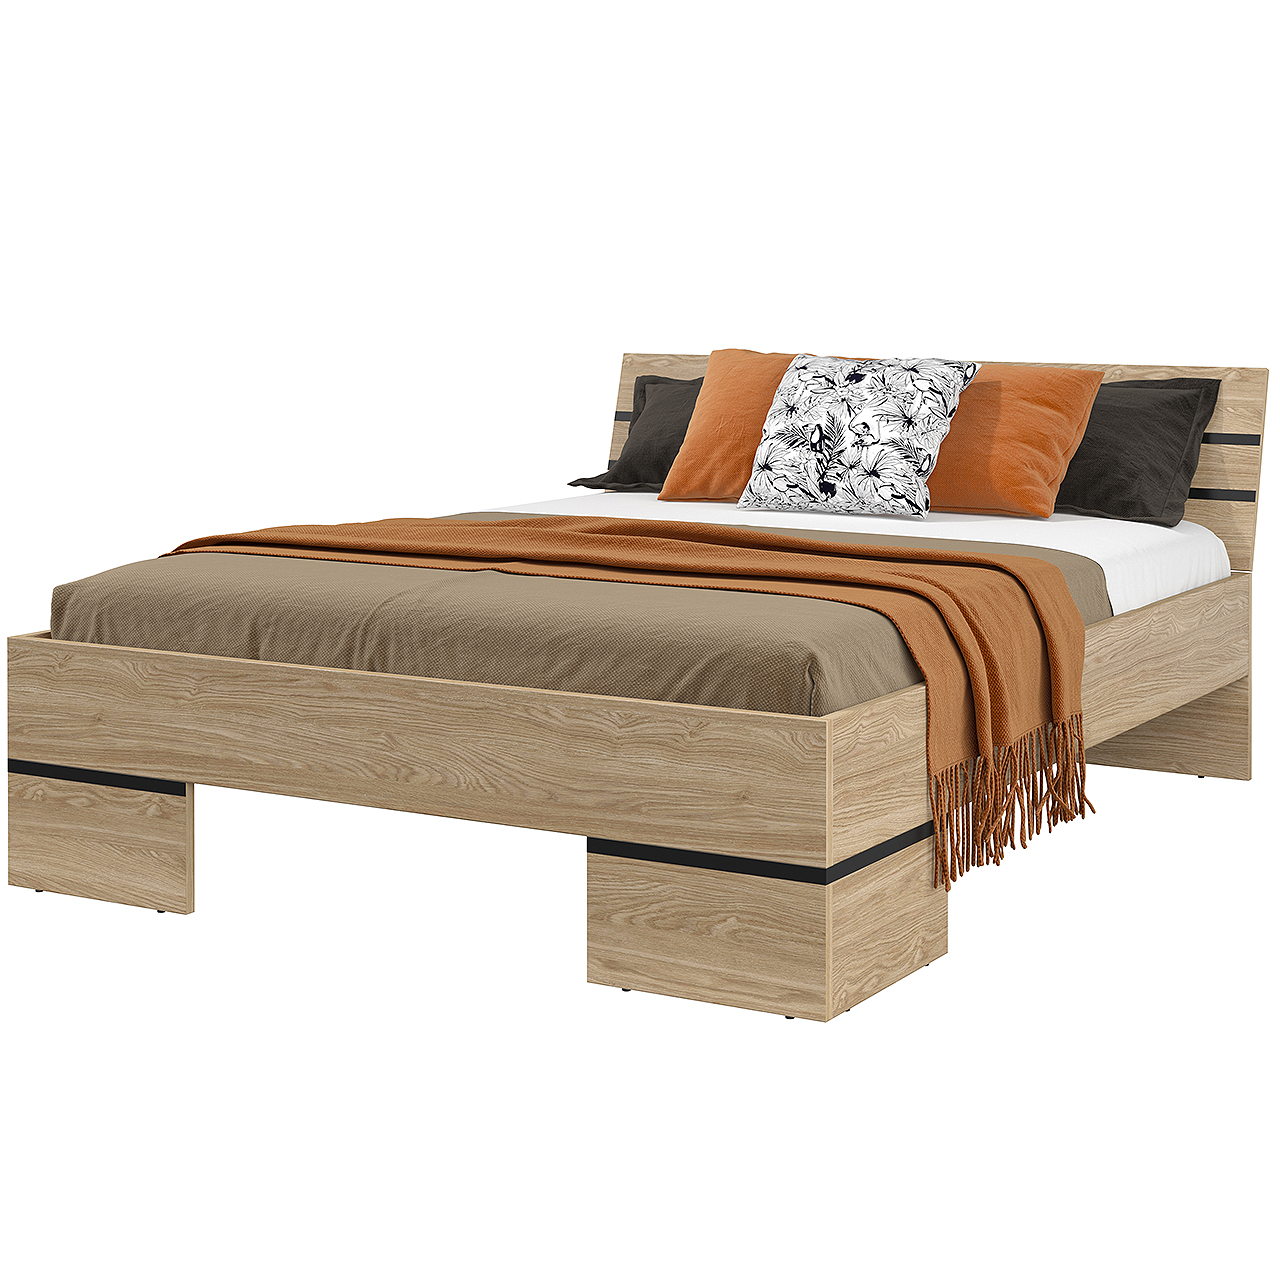 Bed 160x200 OLIVIA 31 oak